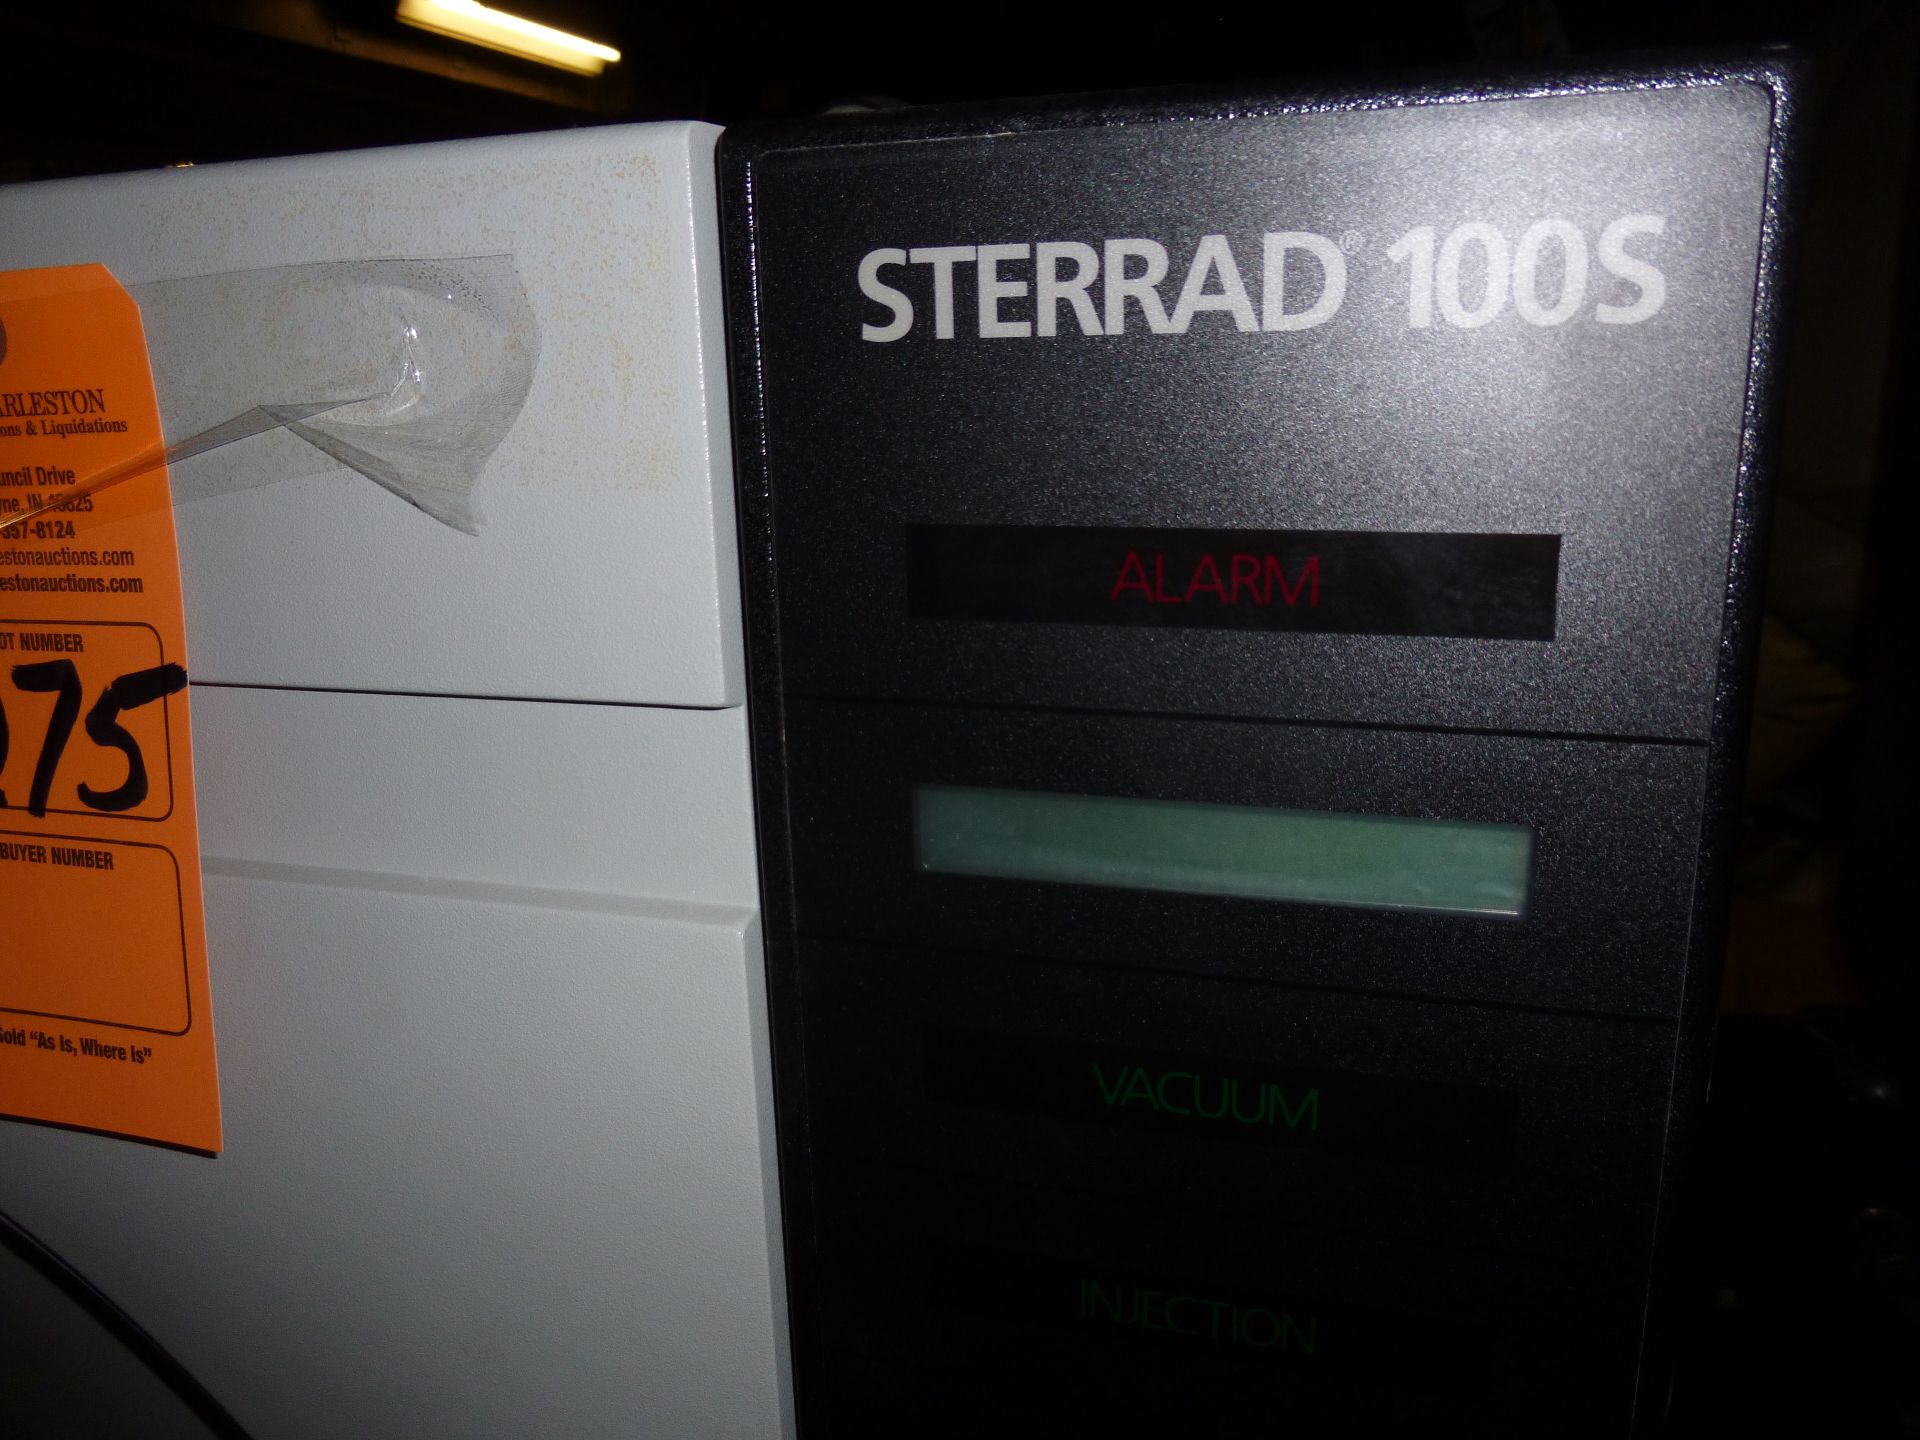 ASP Sterrad 100S, sterilizer - Image 2 of 3